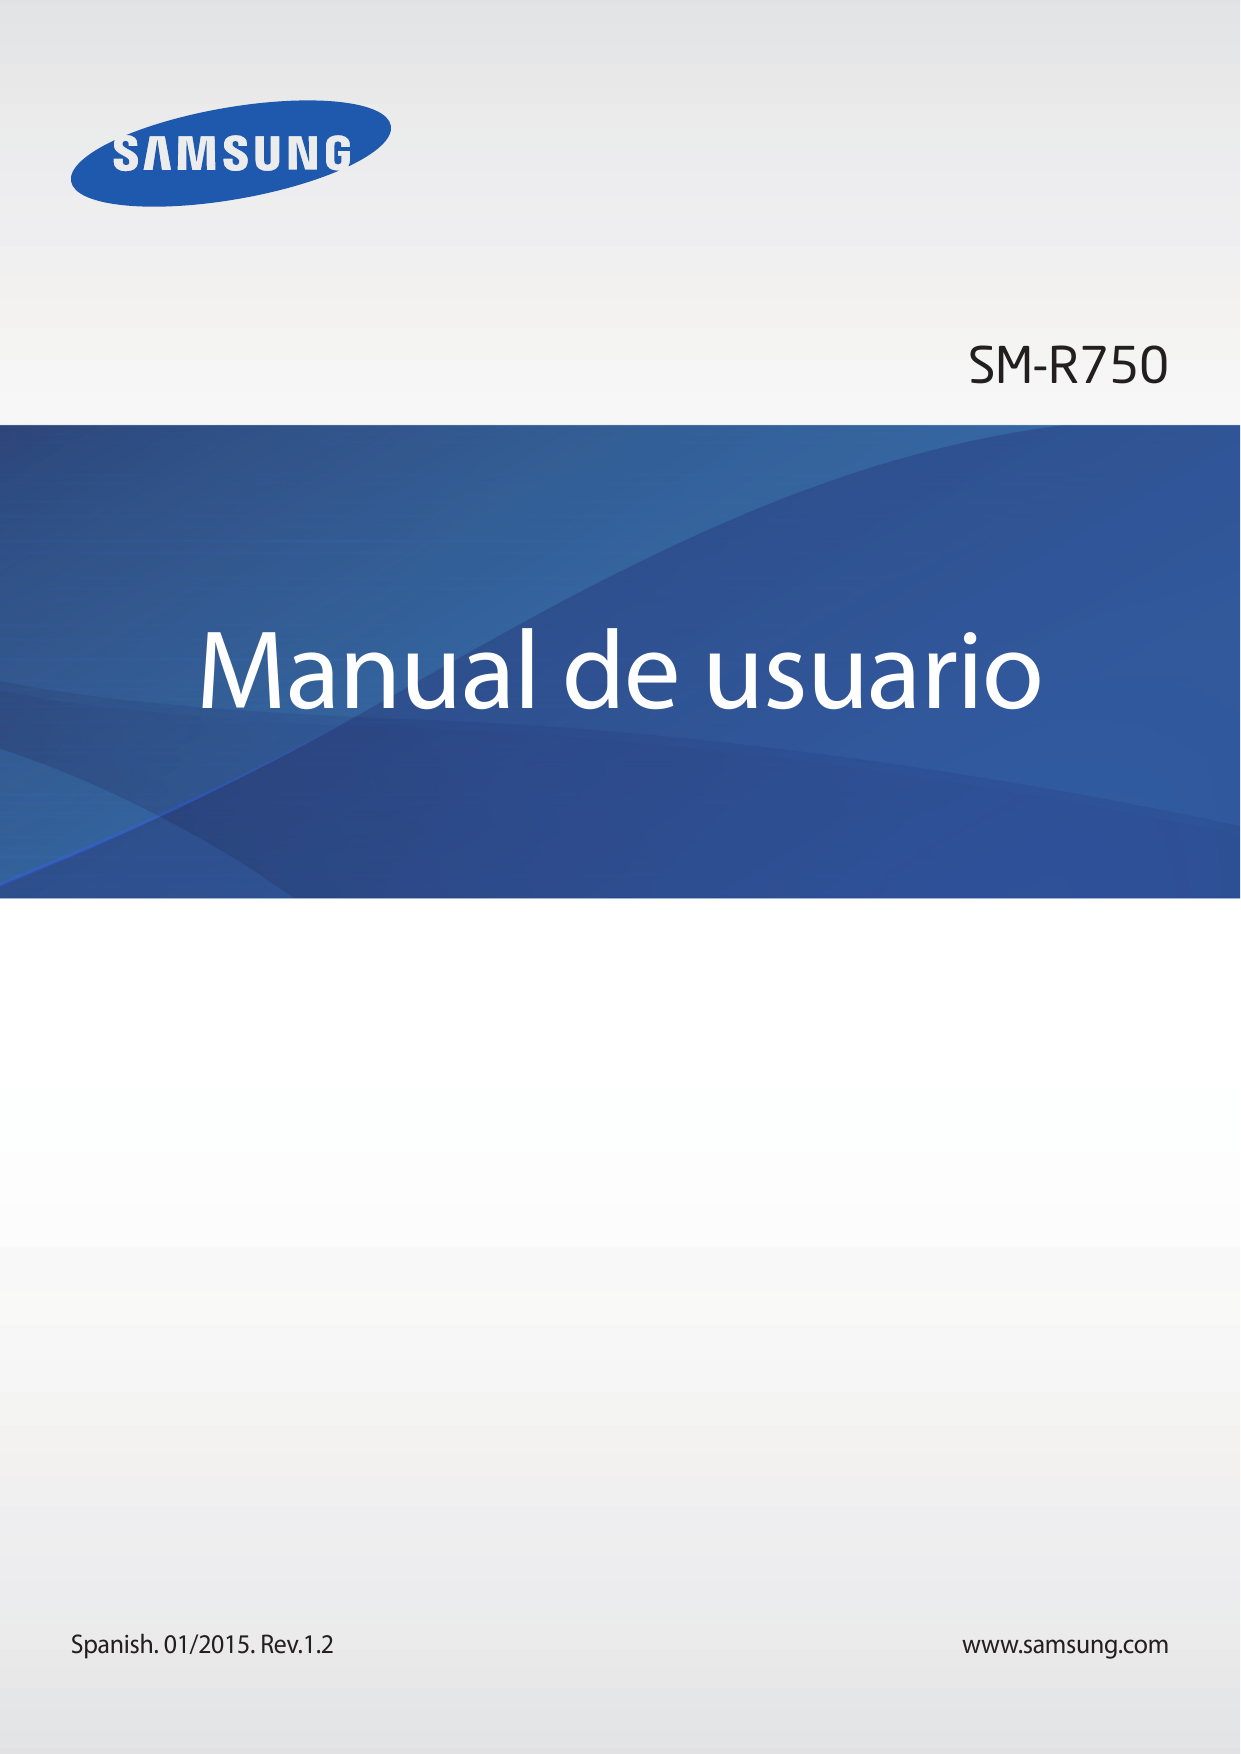 SM-R750Manual de usuarioSpanish. 01/2015. Rev.1.2www.samsung.com